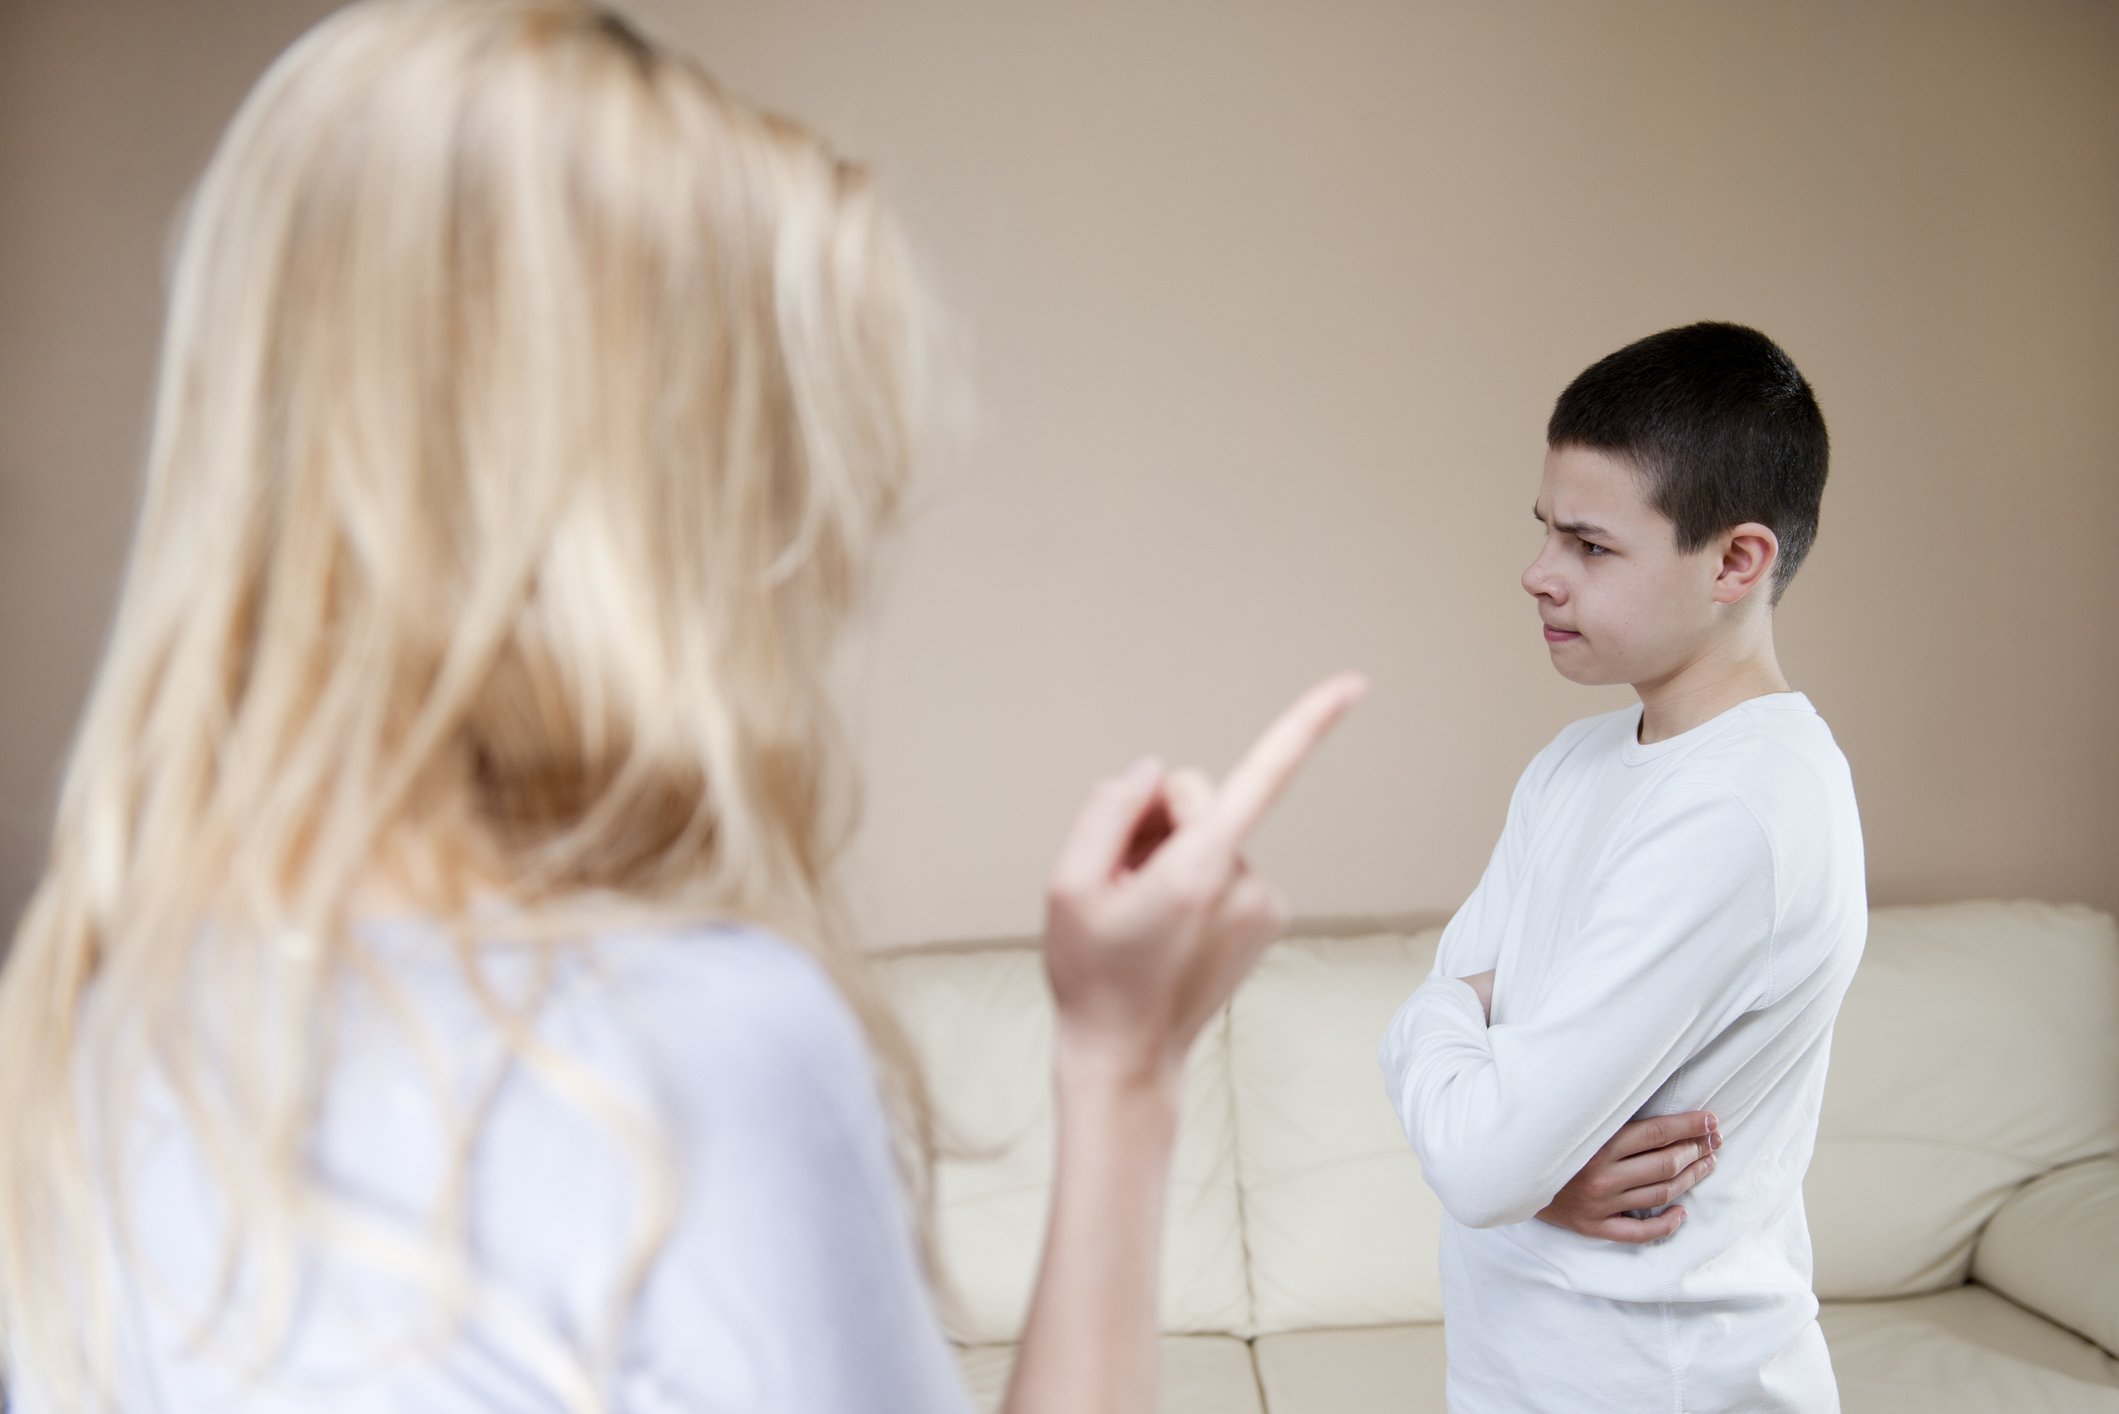 Juliet war wütend auf ihren Sohn, weil er mit Sabrina befreundet war. | Quelle: Getty Images